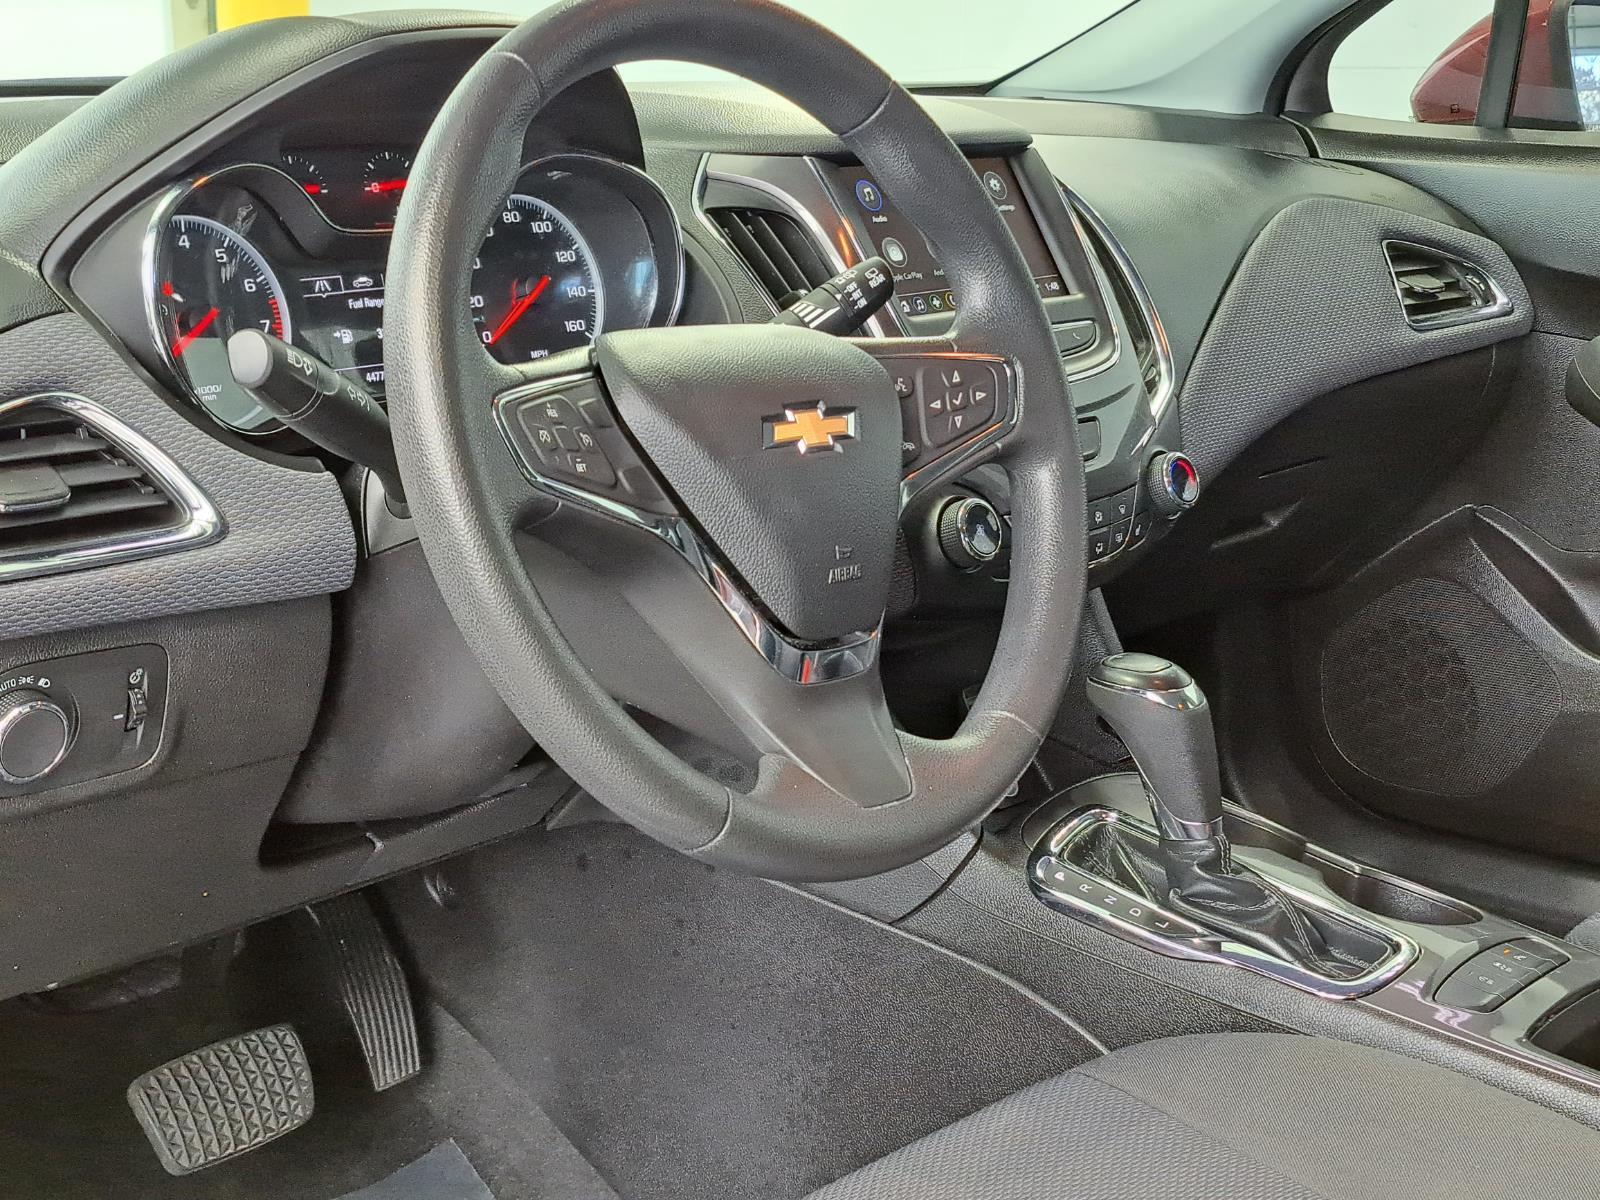 2019 Chevrolet Cruze LT Hatchback 4 Dr. Front Wheel Drive 8